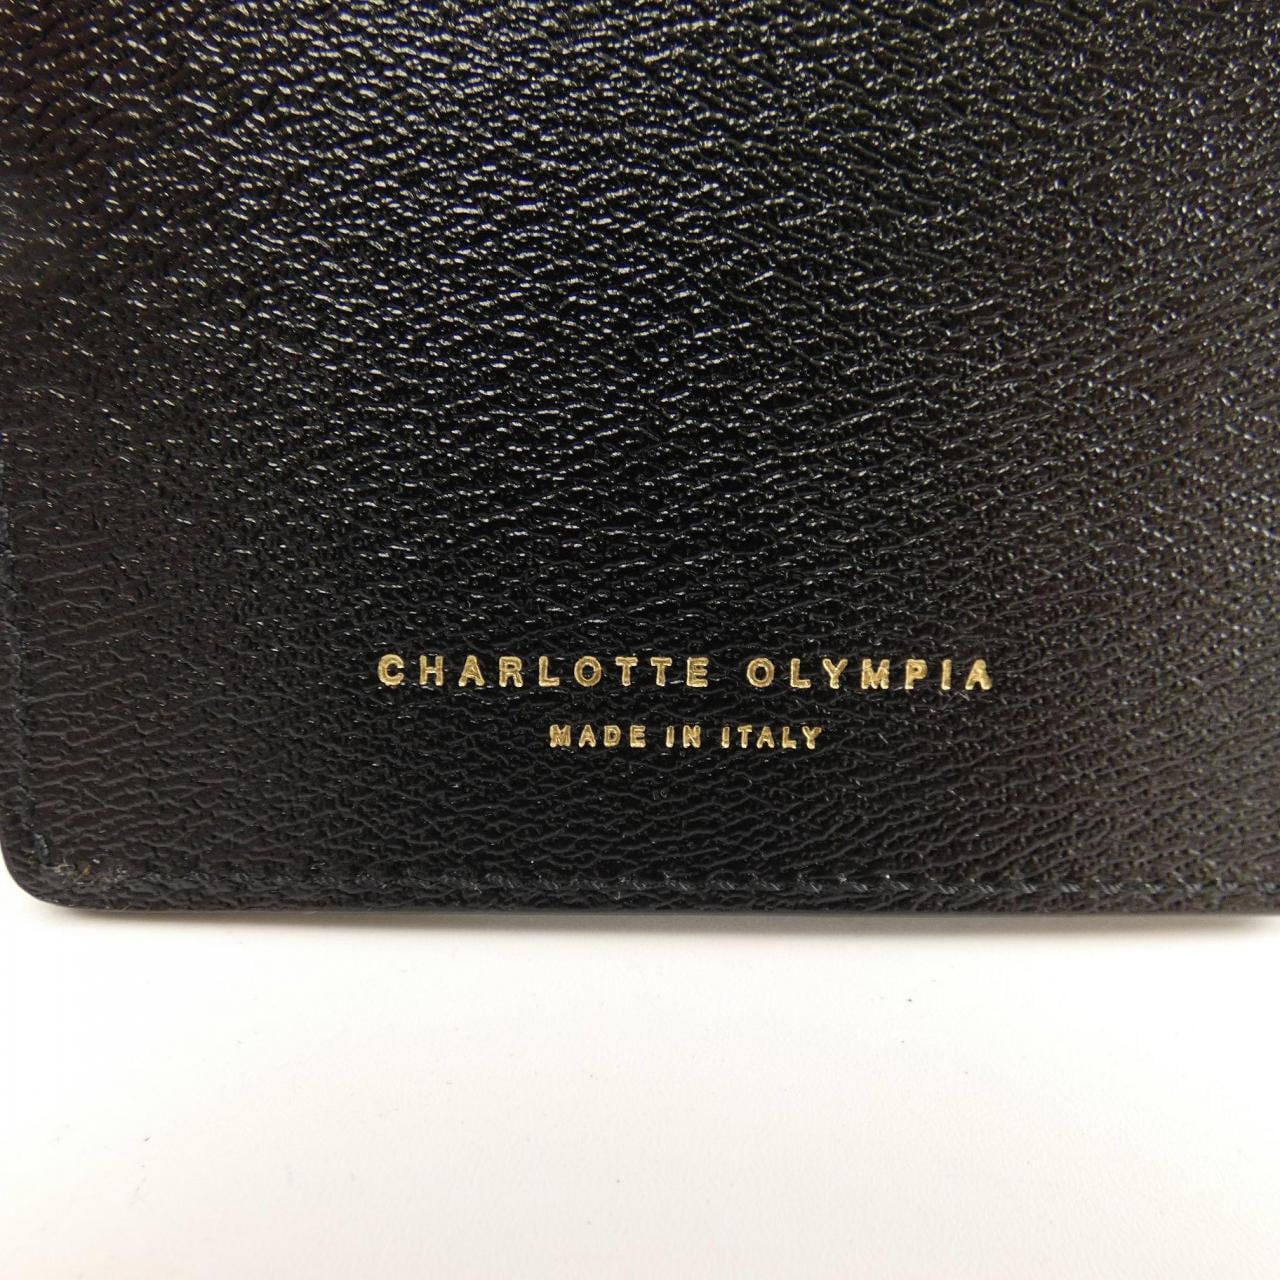 夏洛特奧林匹亞CHARLOTTE OLYMPIA手機套